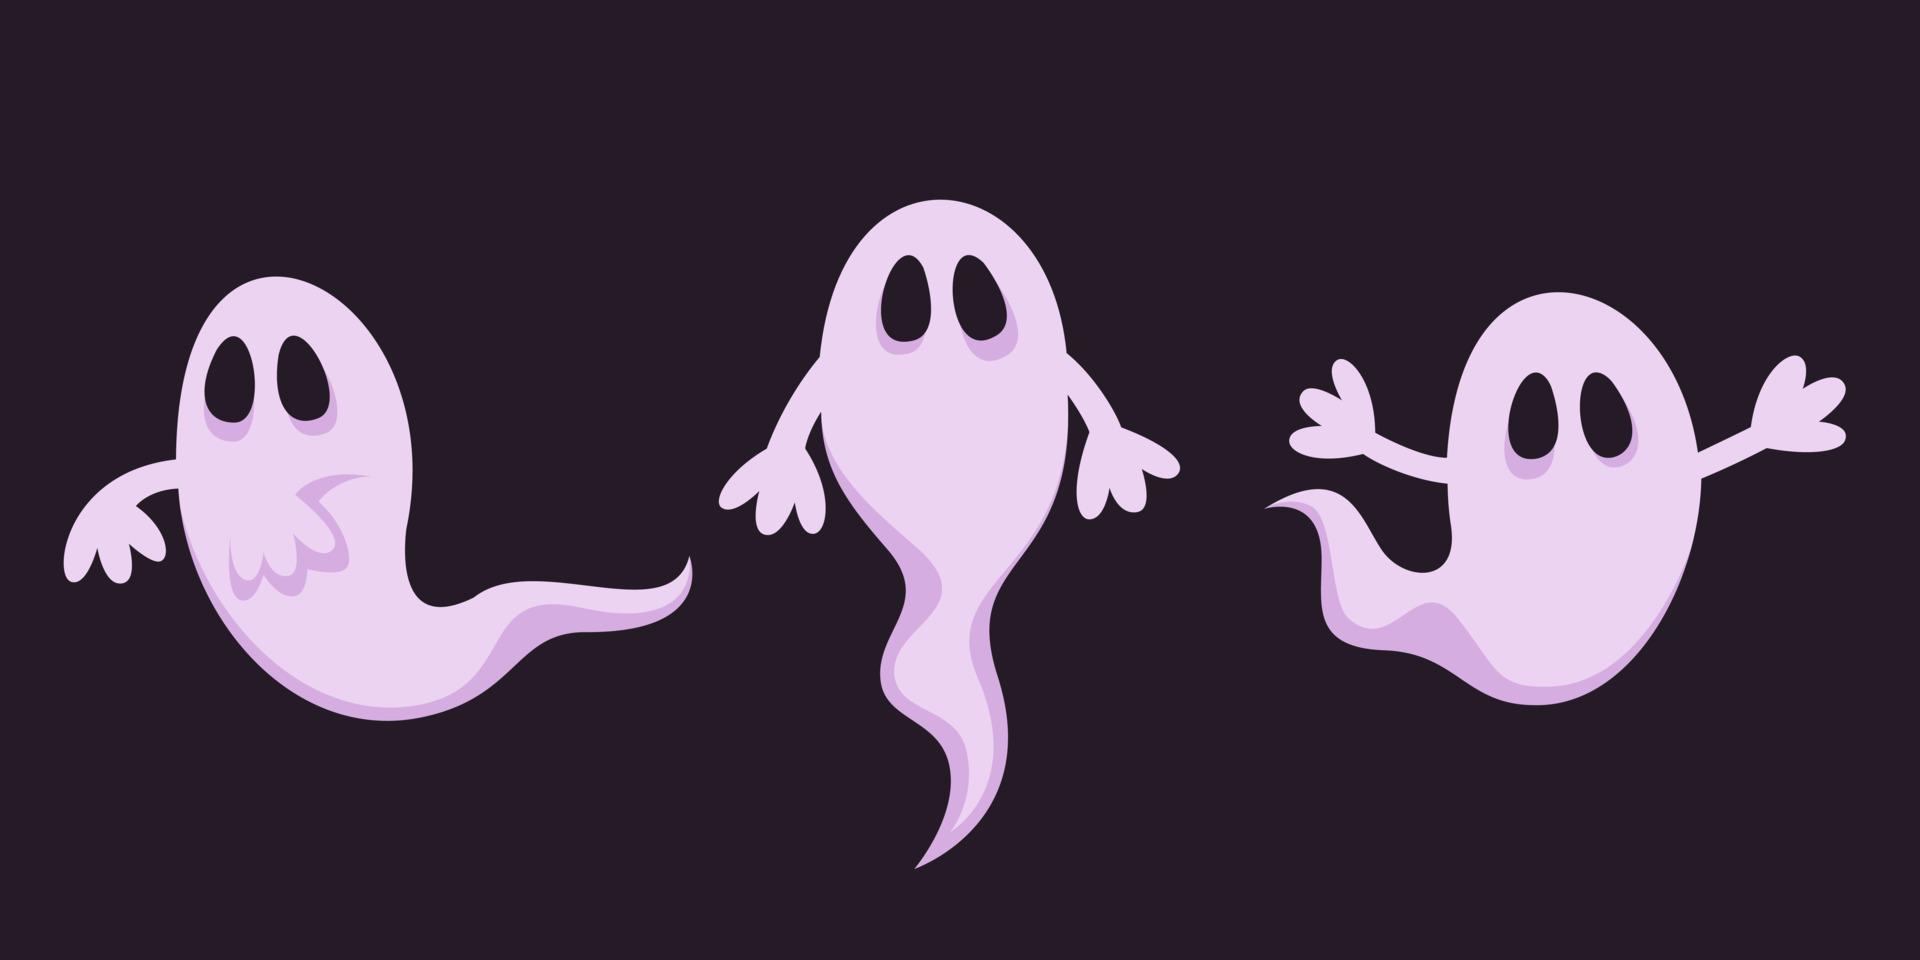 fantôme dans différentes poses. personnage d'halloween effrayant en style cartoon. vecteur